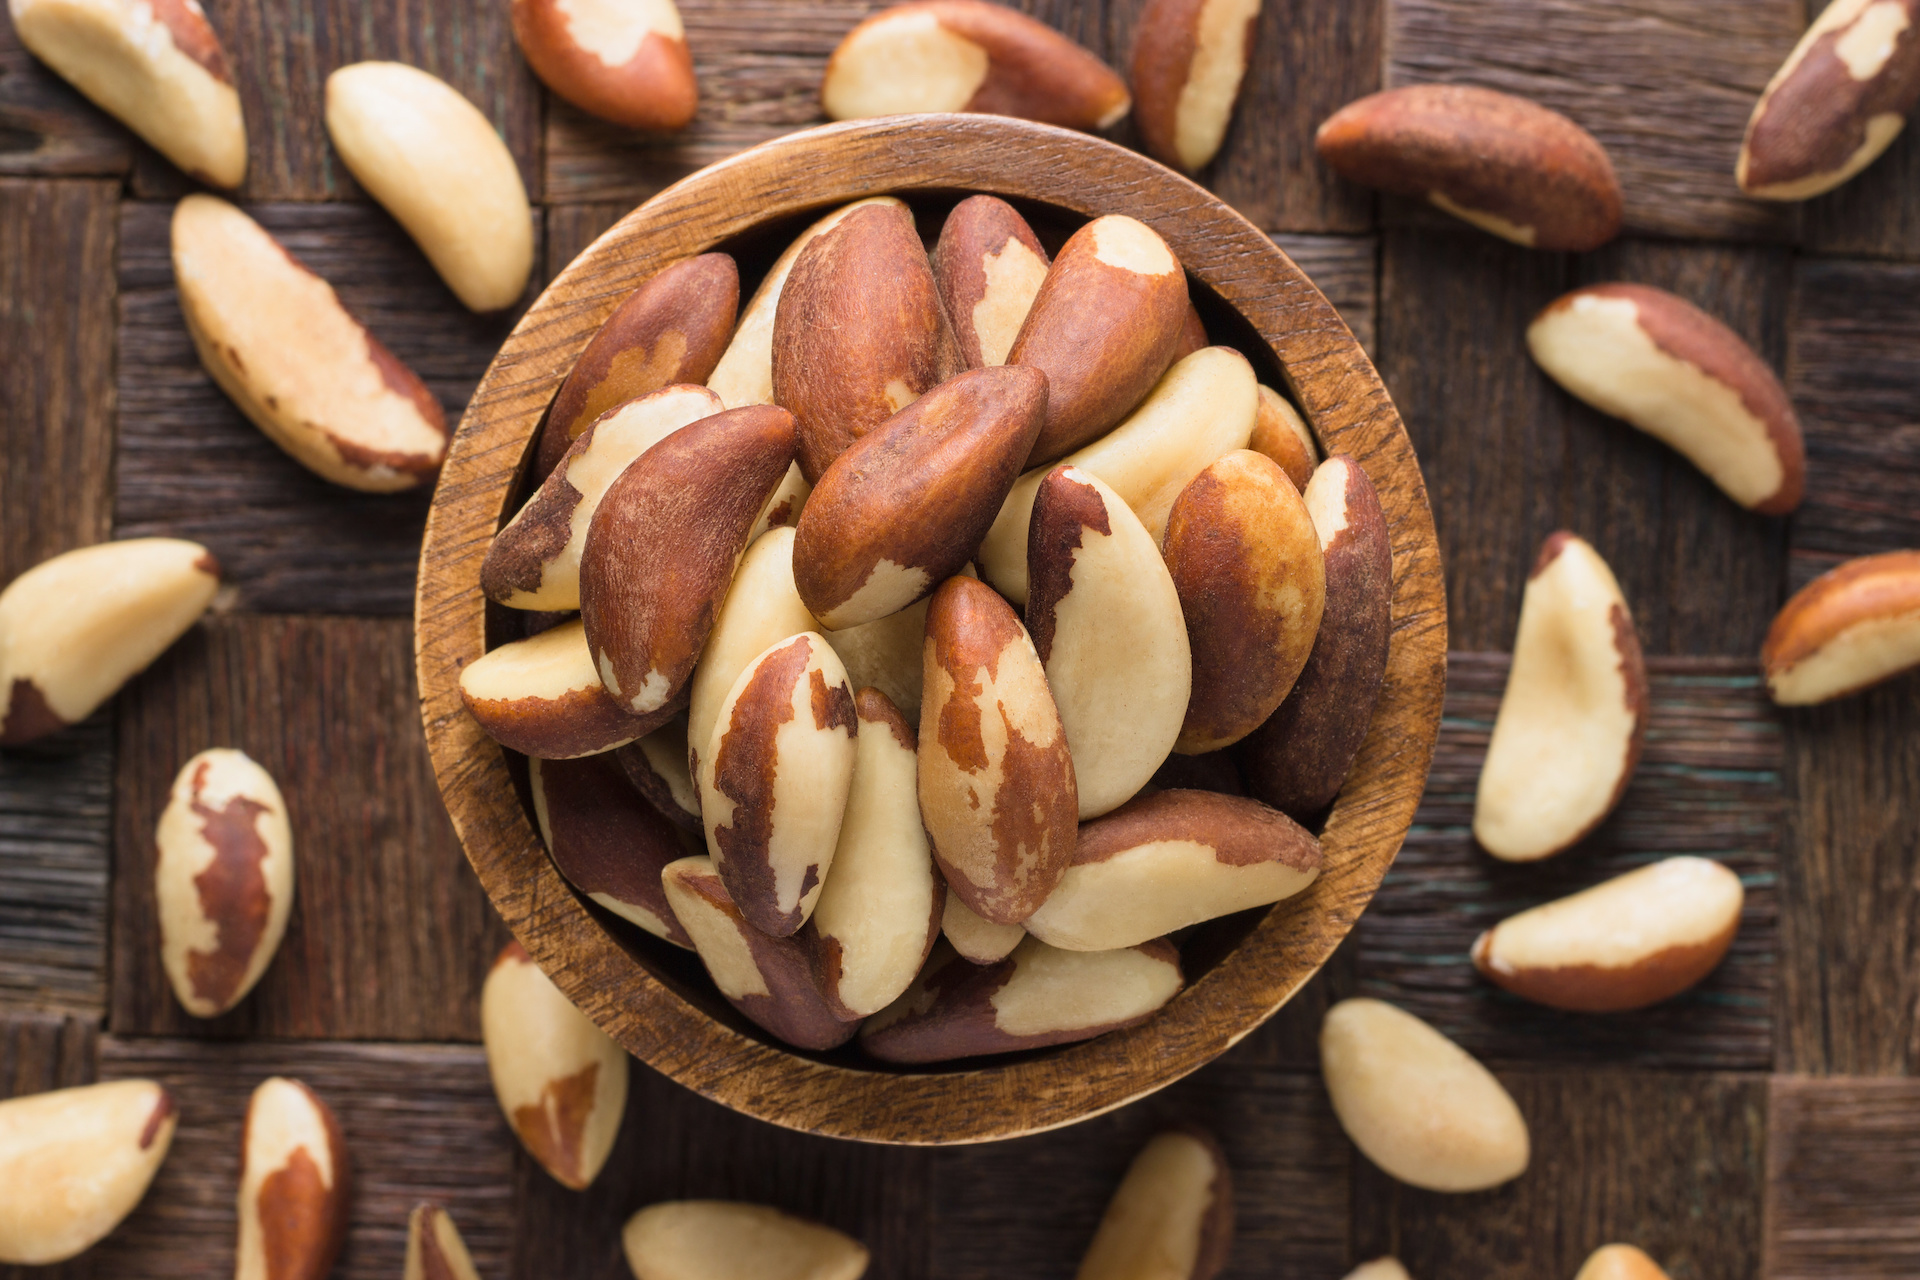 Buy Brazil Nuts in Bulk Worldwide